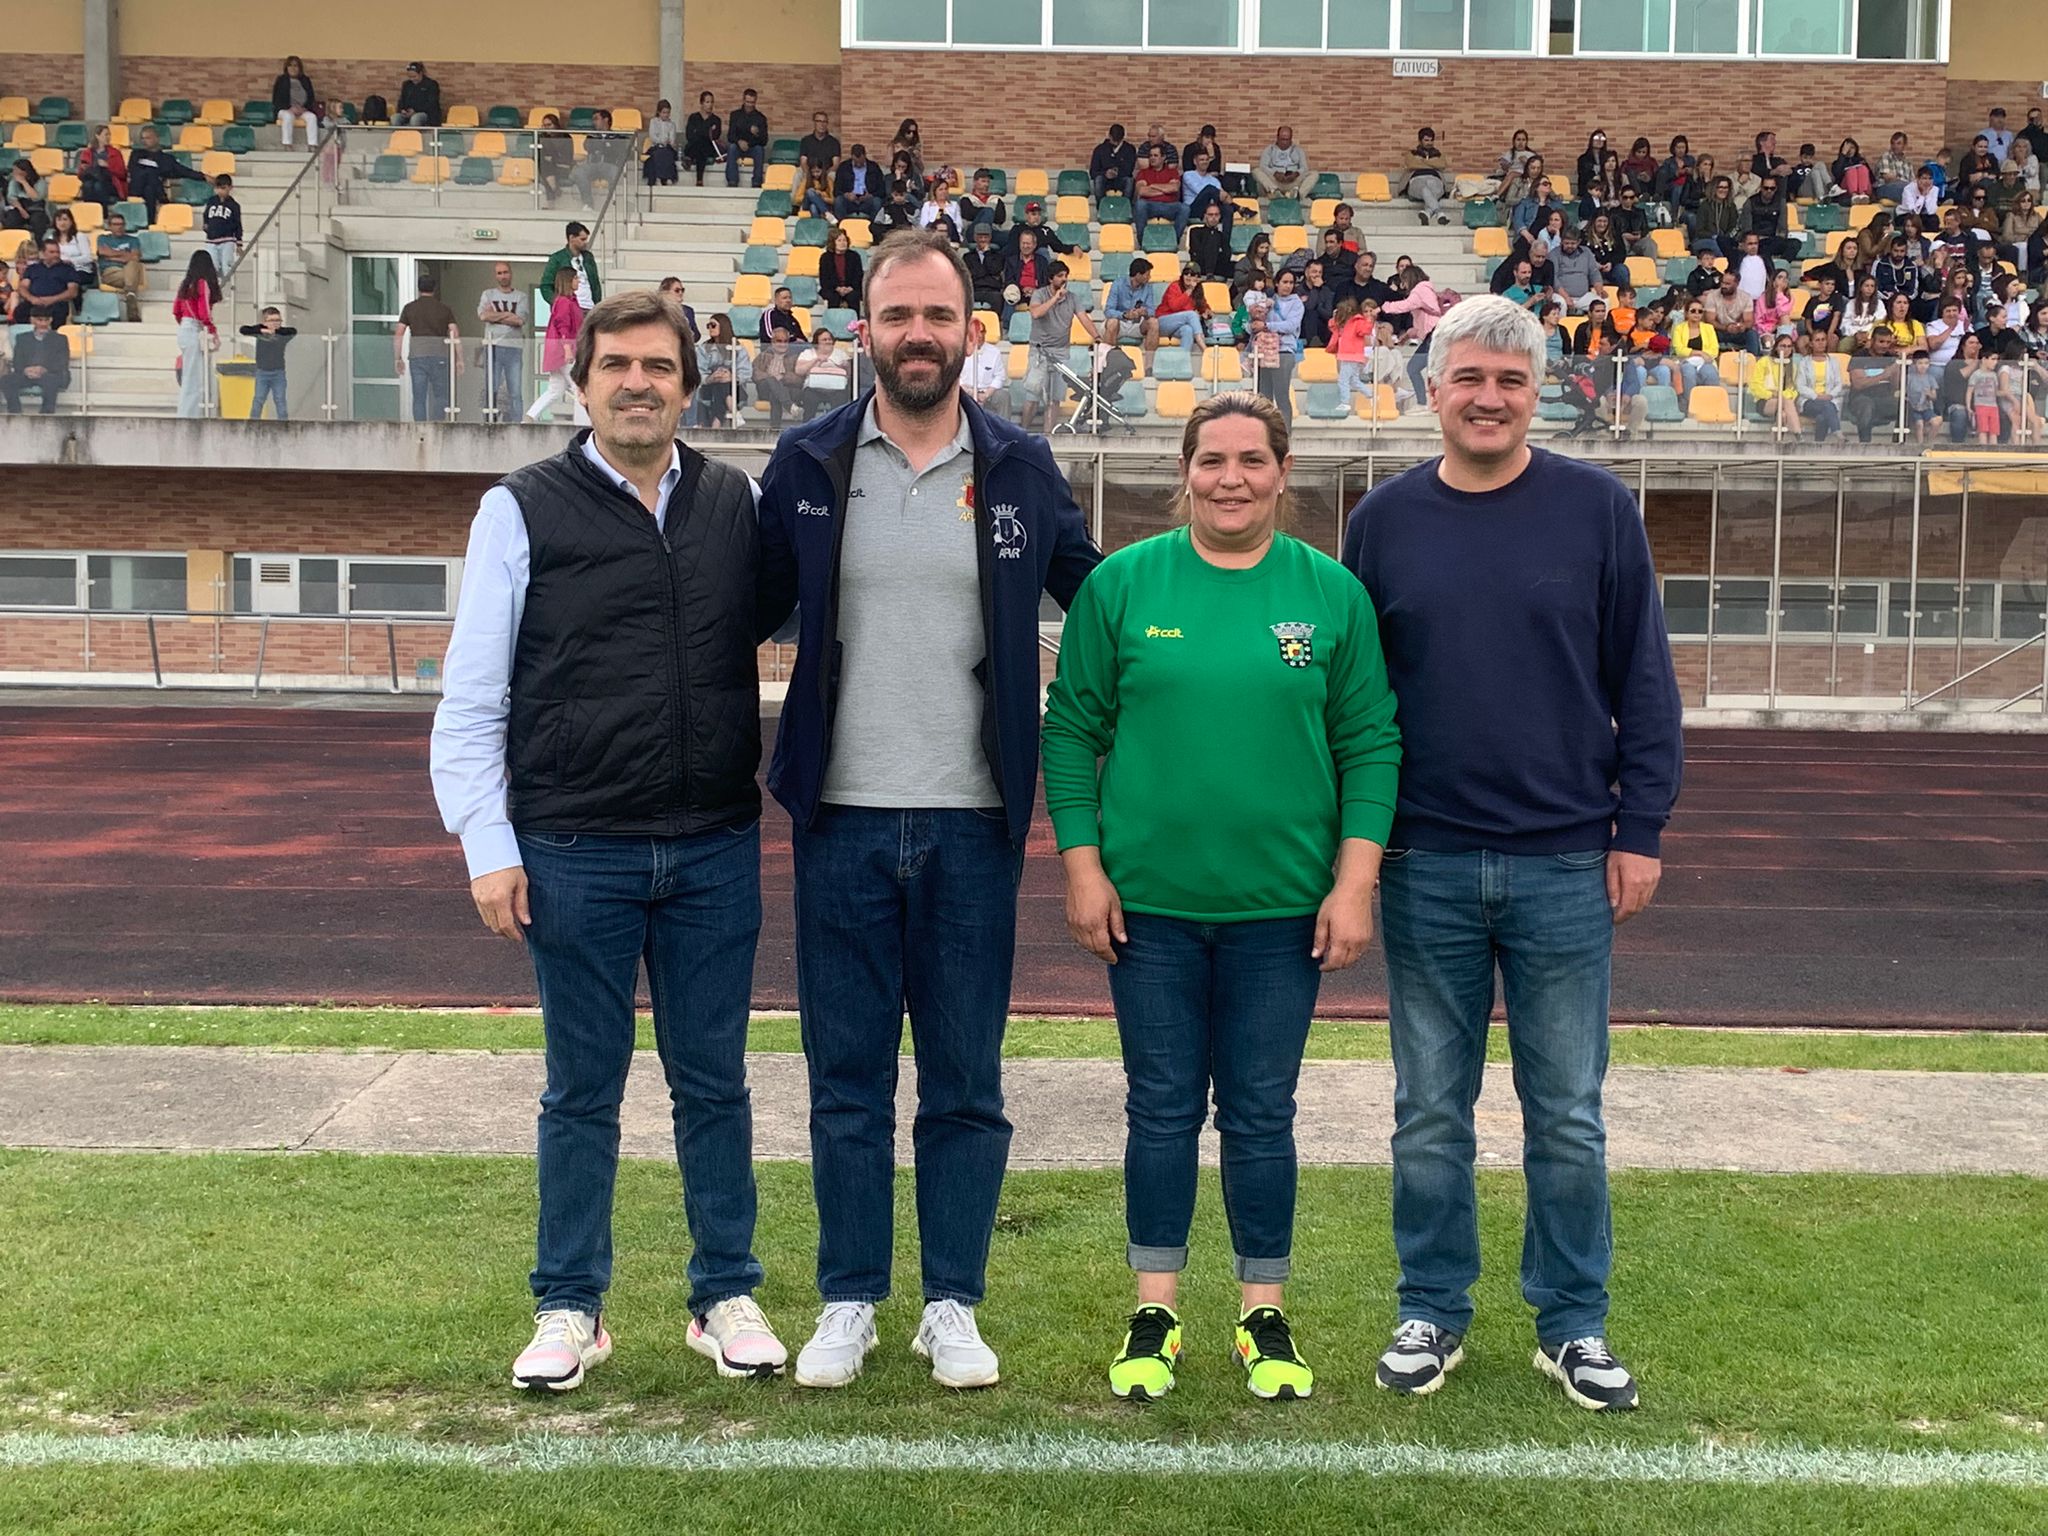 Macedo de Cavaleiros e Vila Pouca de Aguiar acolheram o 1º Encontro Inter-Distrital de Futebol para crianças